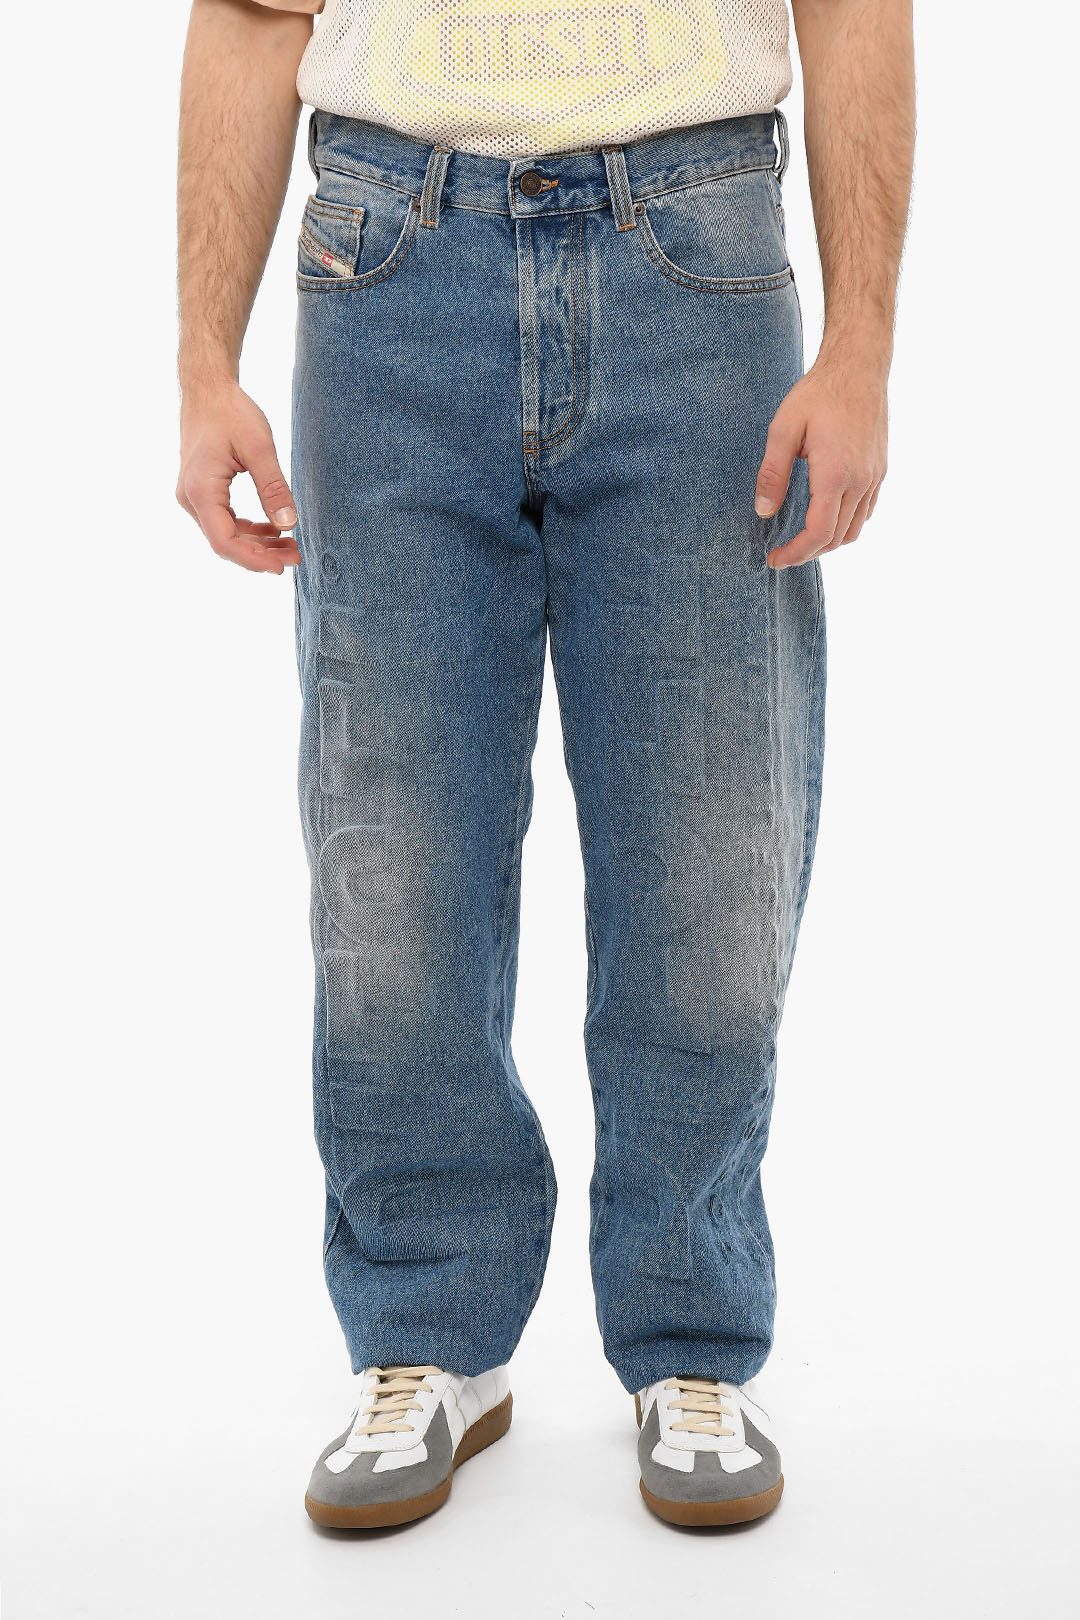 Score daar ben ik het mee eens Ontmoedigd zijn Diesel Mid-washed FS4 Loose-fitting Jeans with Debossed Logo men - Glamood  Outlet